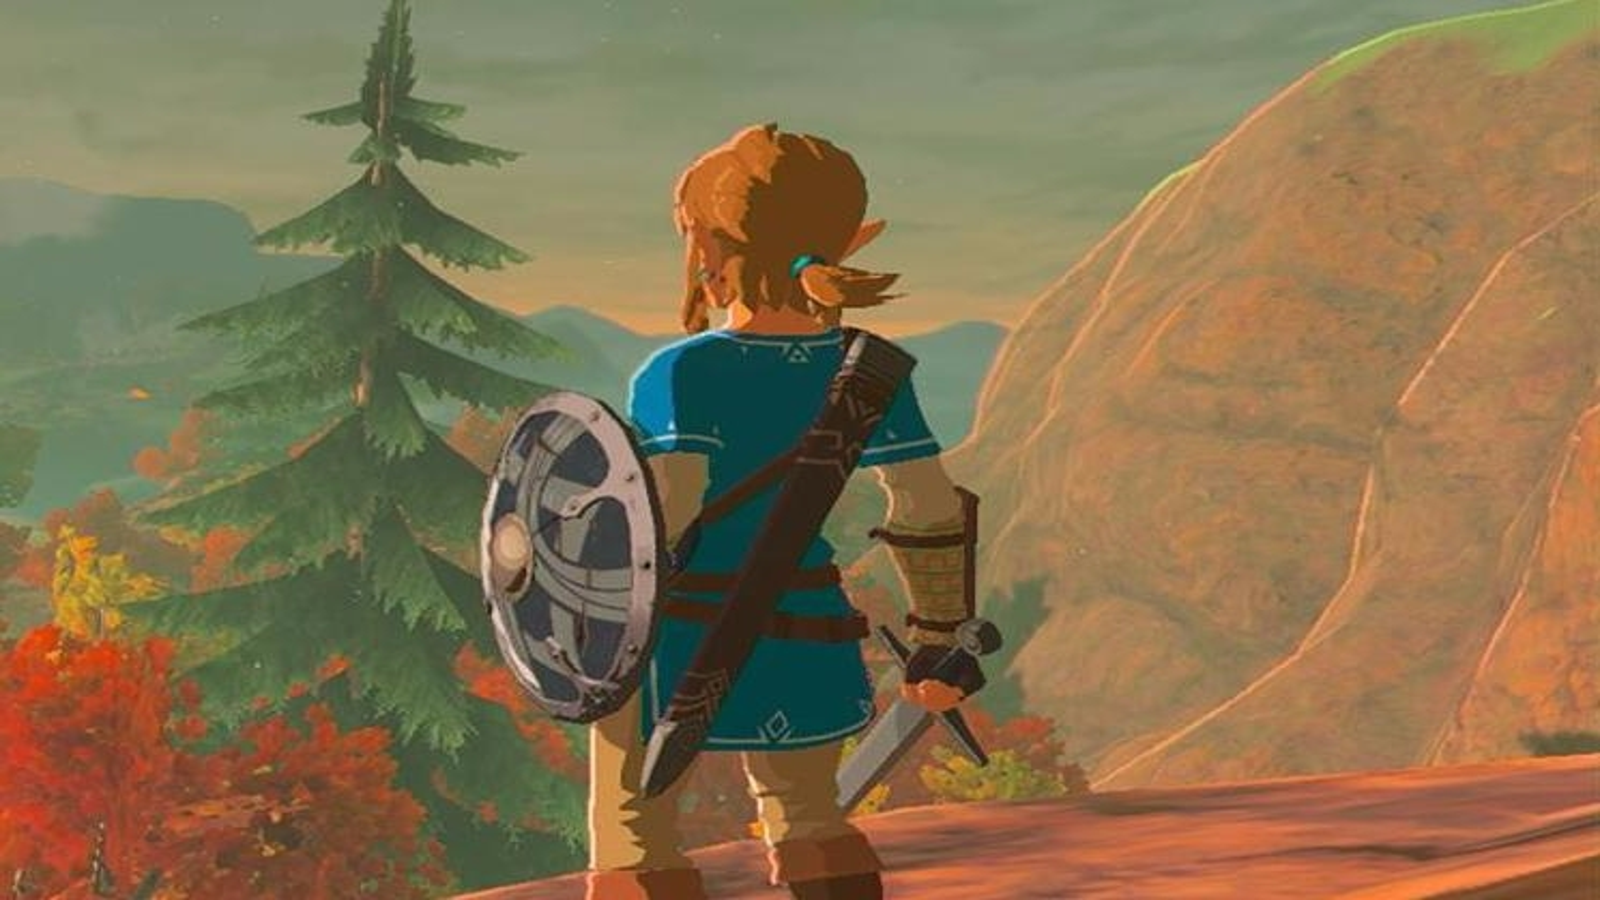 WiiU, Switch, CEMU] The Legend Of Zelda: Breath Of The Wild vZeros